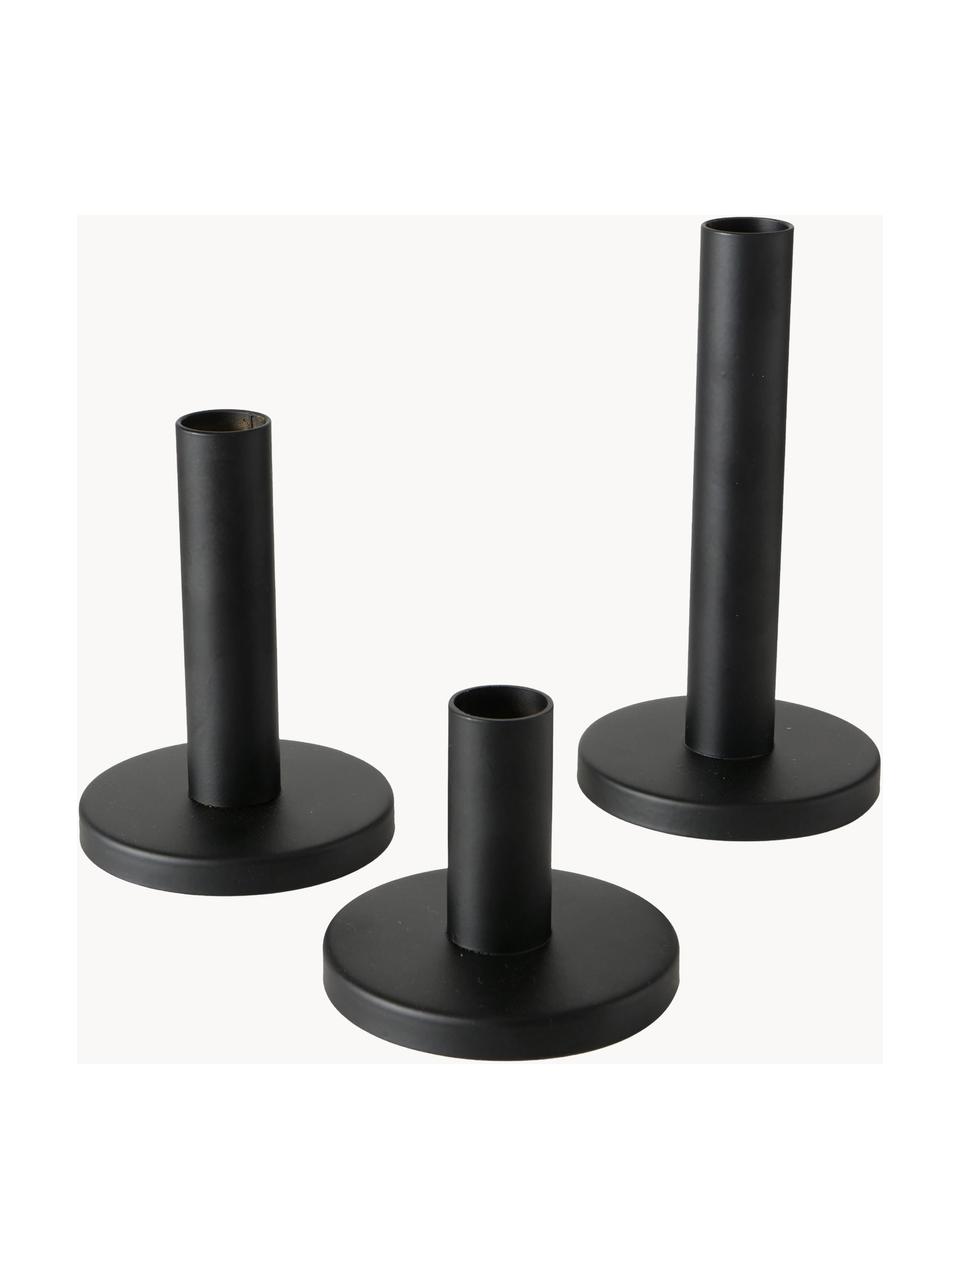 Kerzenhalter-Set Malko, 3er-Set, Metall, beschichtet, Schwarz, Set mit verschiedenen Größen